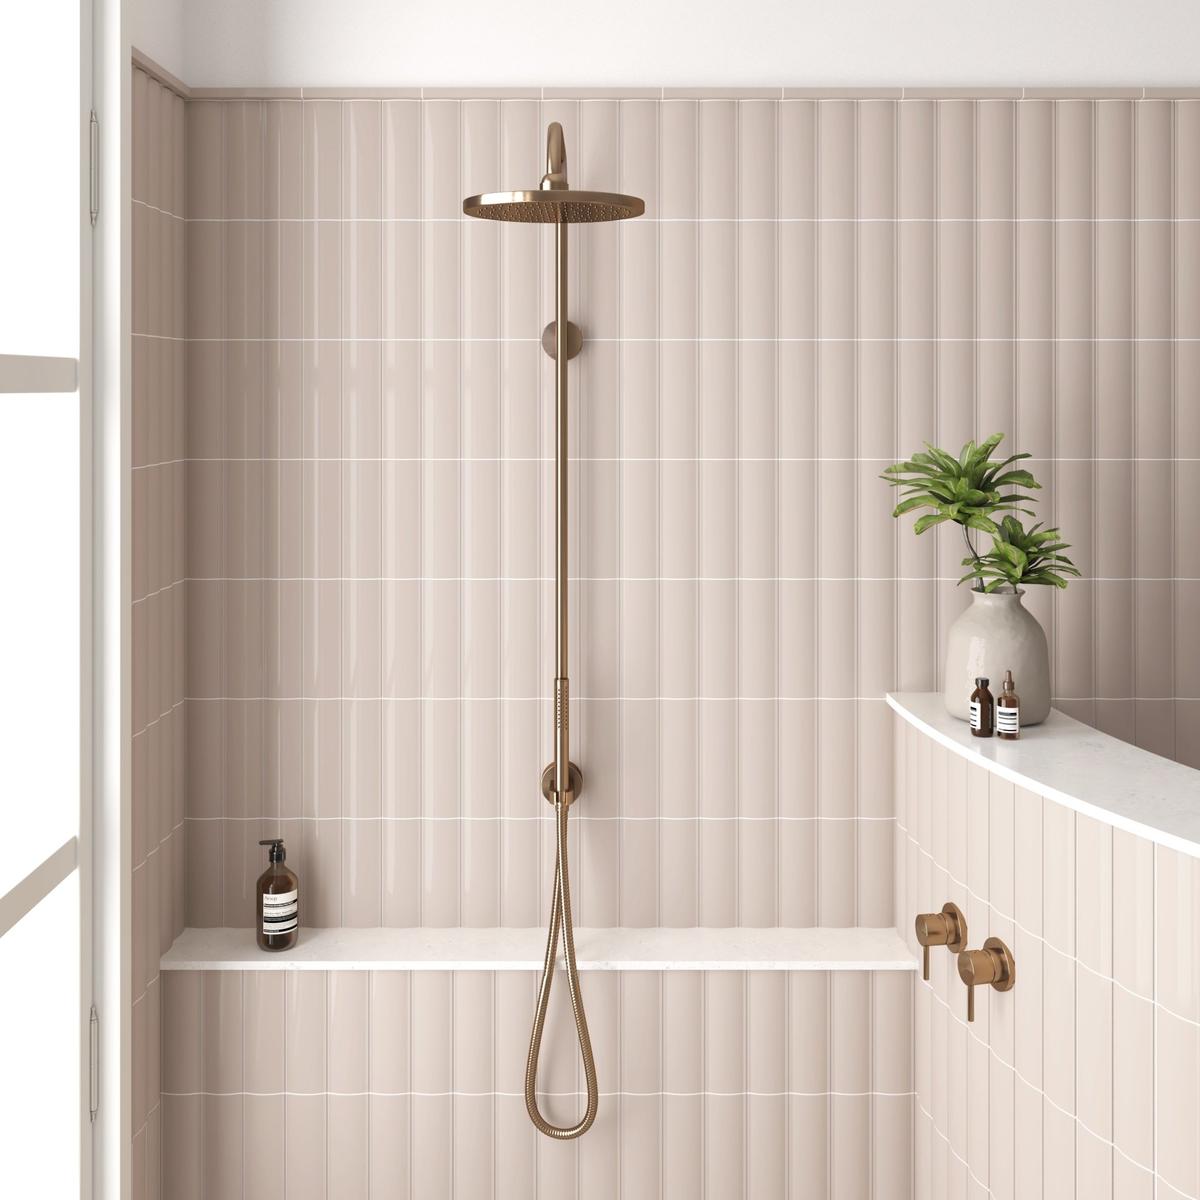 Carrelage uni rose dans une salle de bain aux tons clairs avec douche dorée et éléments de décoration verts